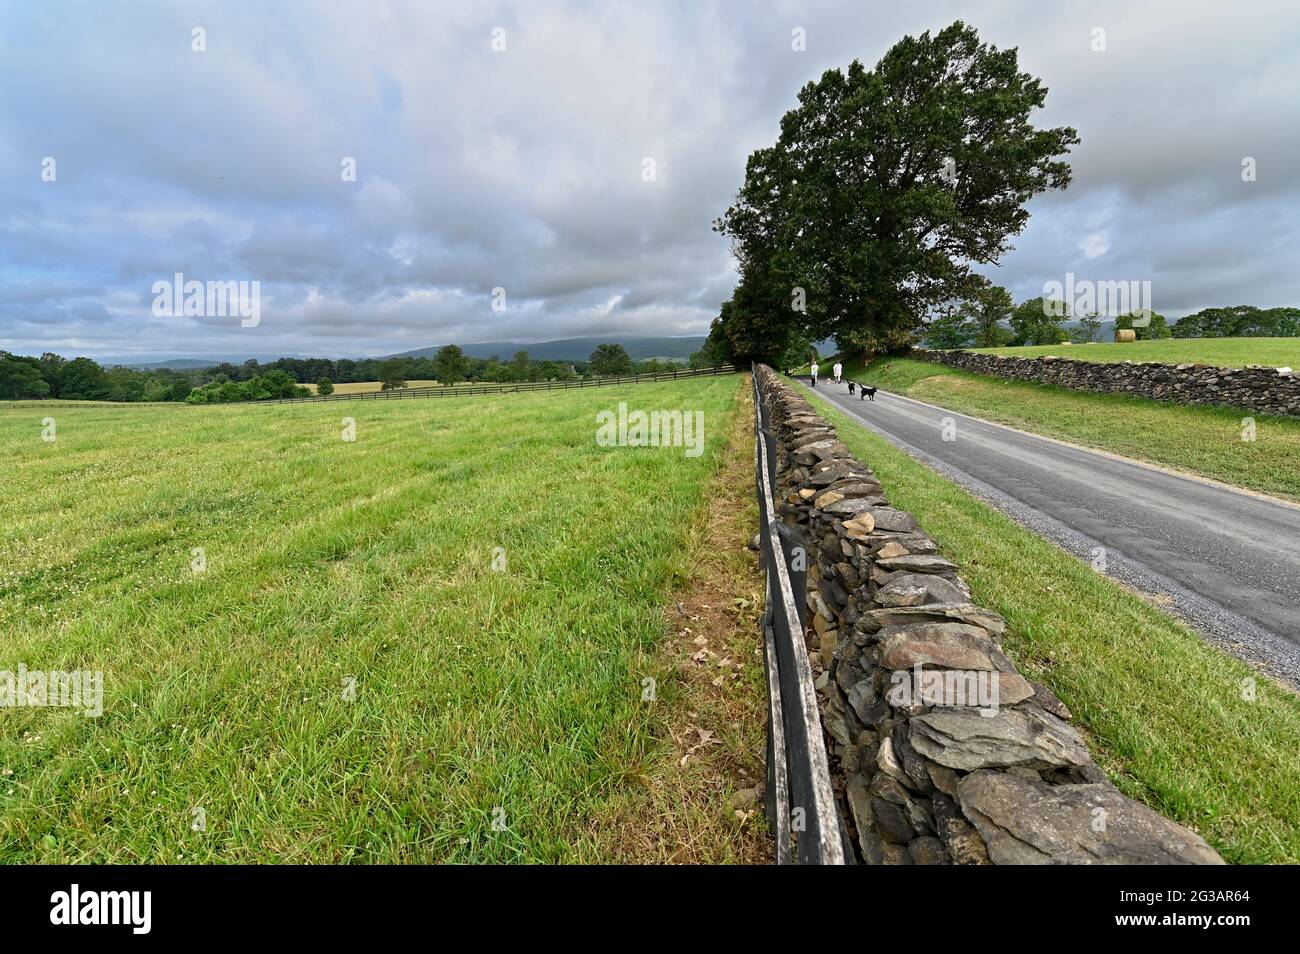 ESTADOS UNIDOS - 13 de junio de 2021: El Loudoun 1725 Gravel Grinder es un paseo escénico en bicicleta a lo largo de carreteras históricas de grava en Virginia del Norte. Situado al este de o. Foto de stock